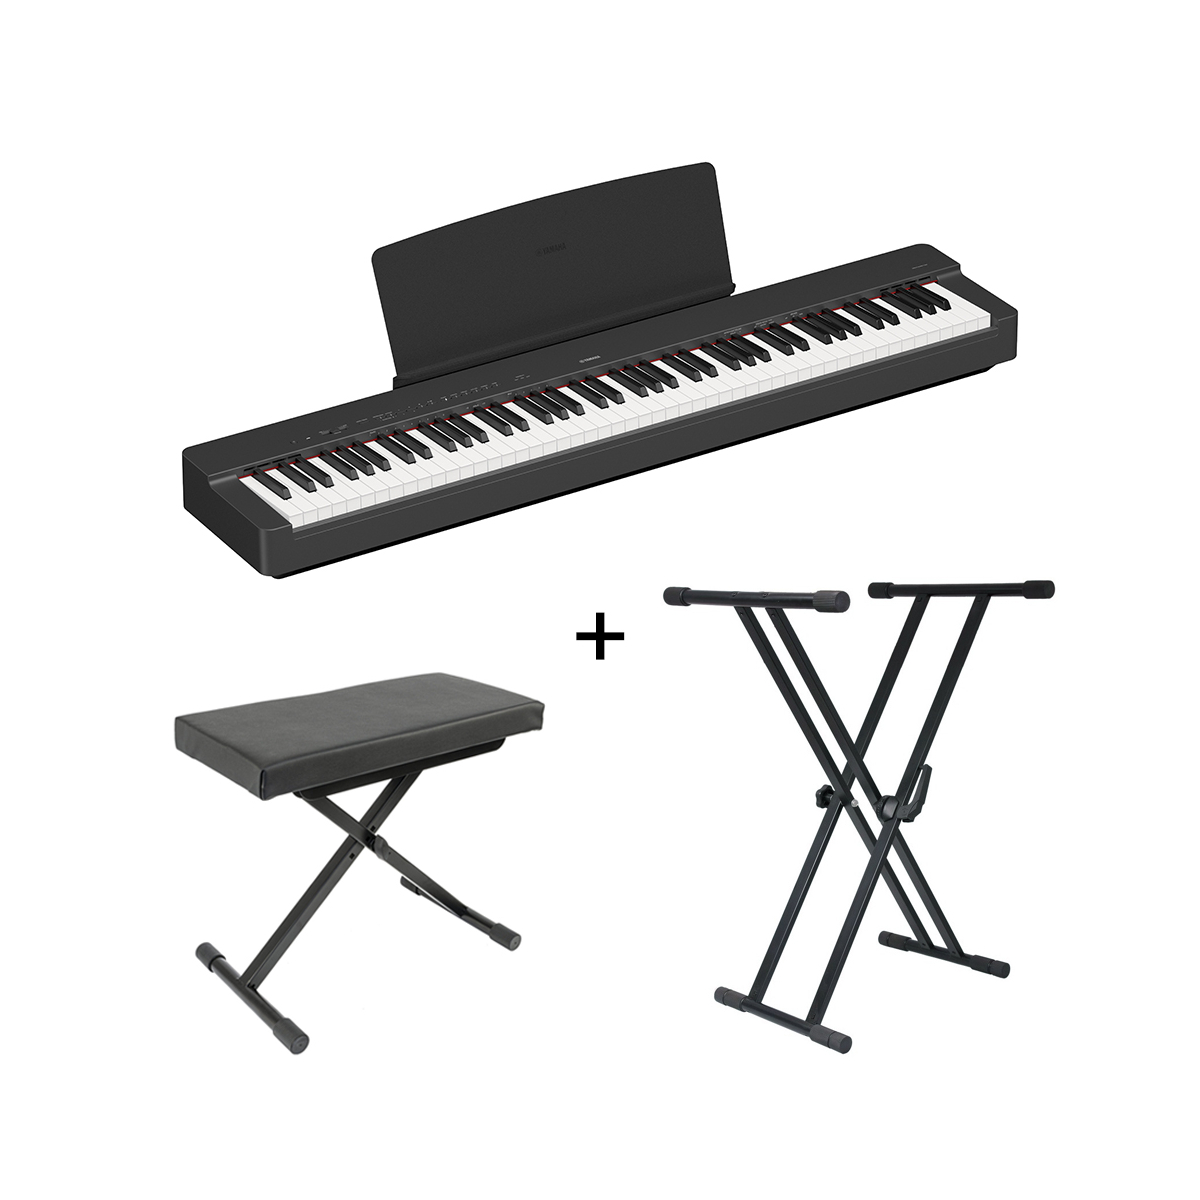 Support X clavier piano et synthétiseur en métal